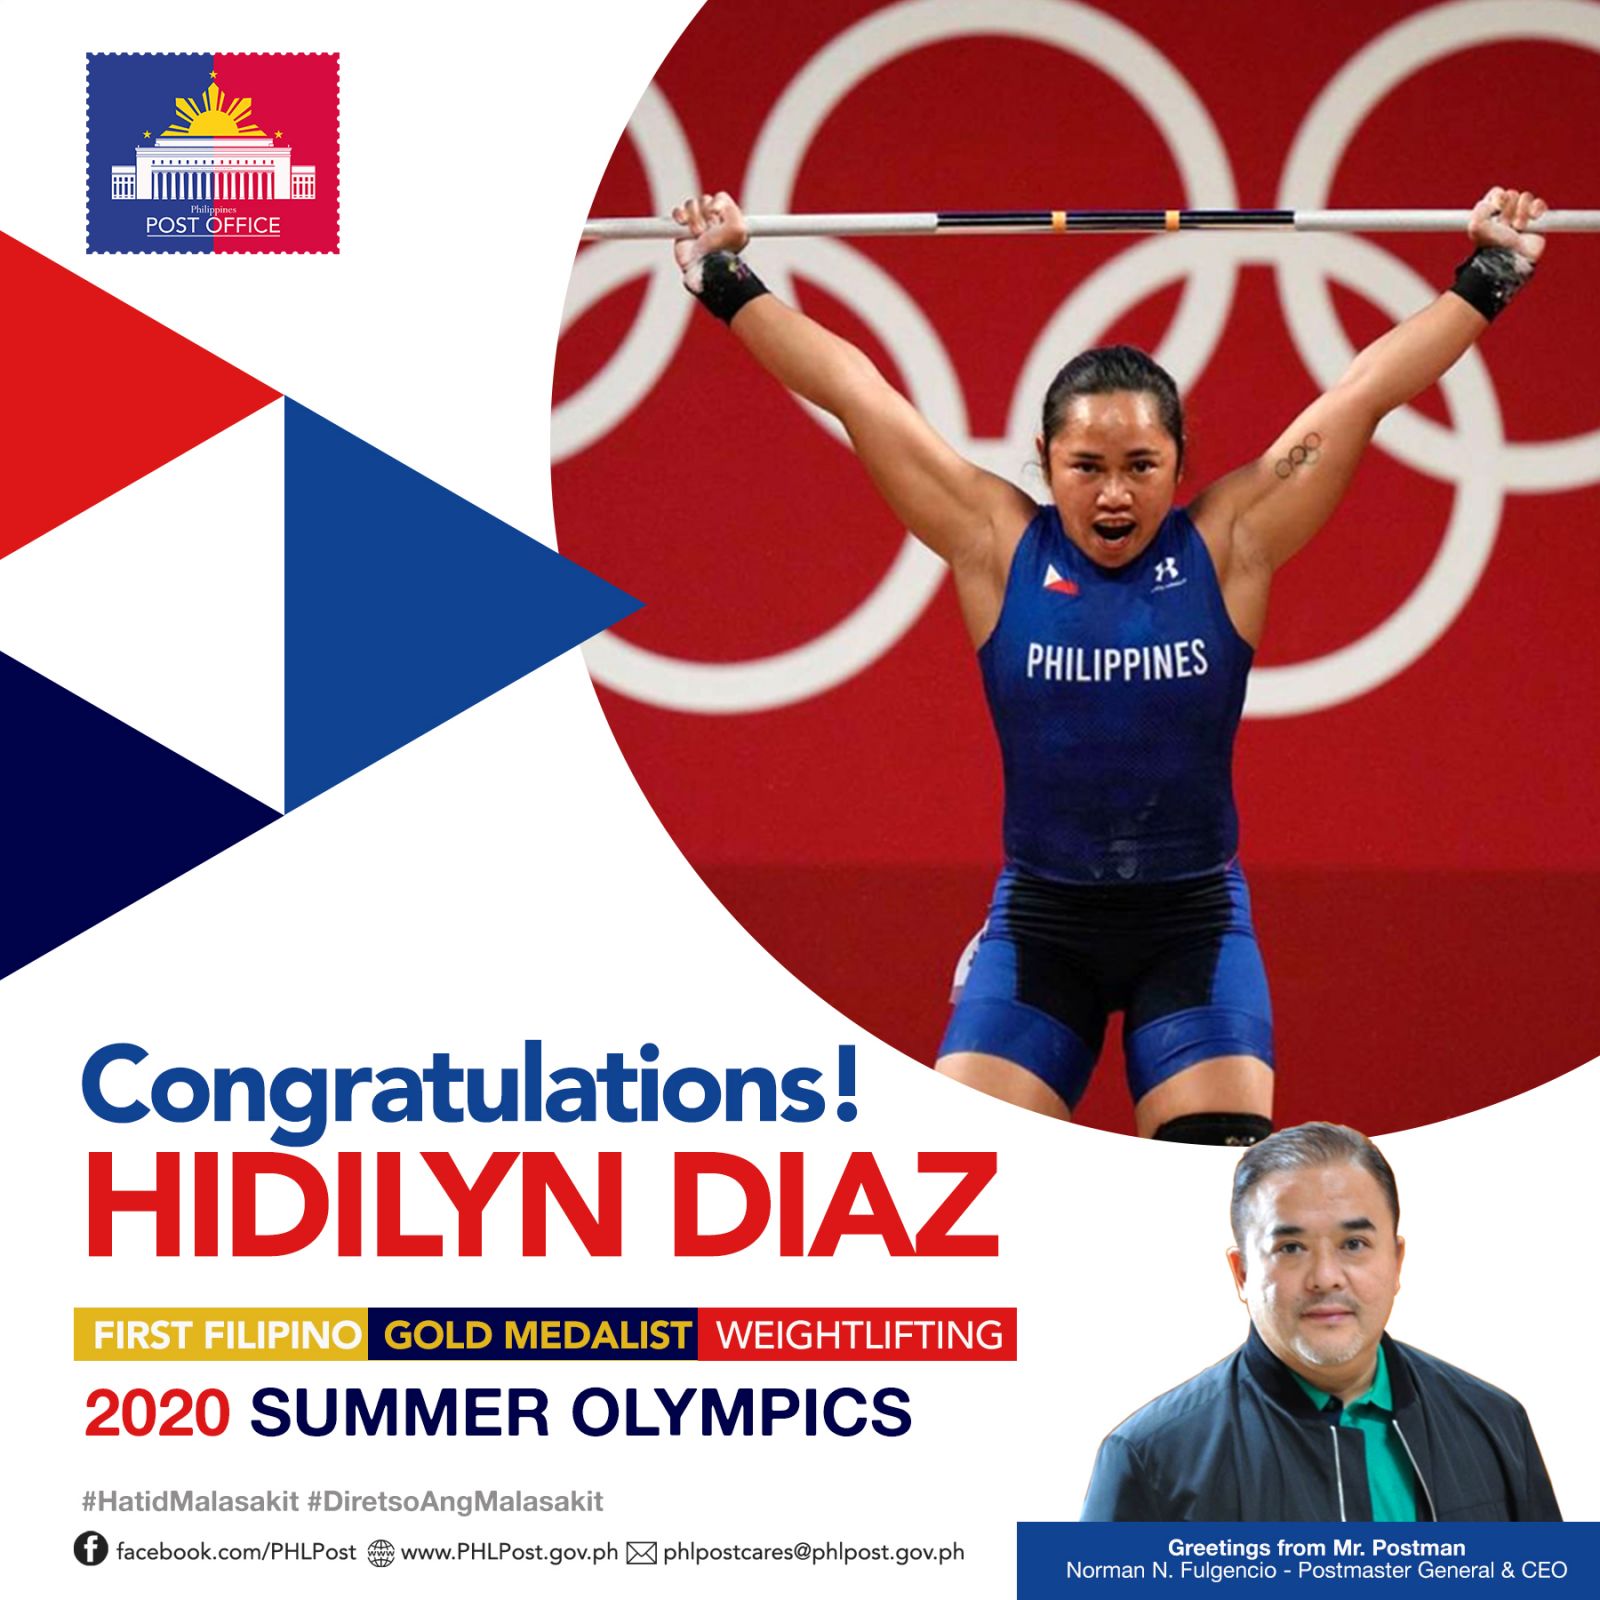 Congratulations Hidilyn Diaz